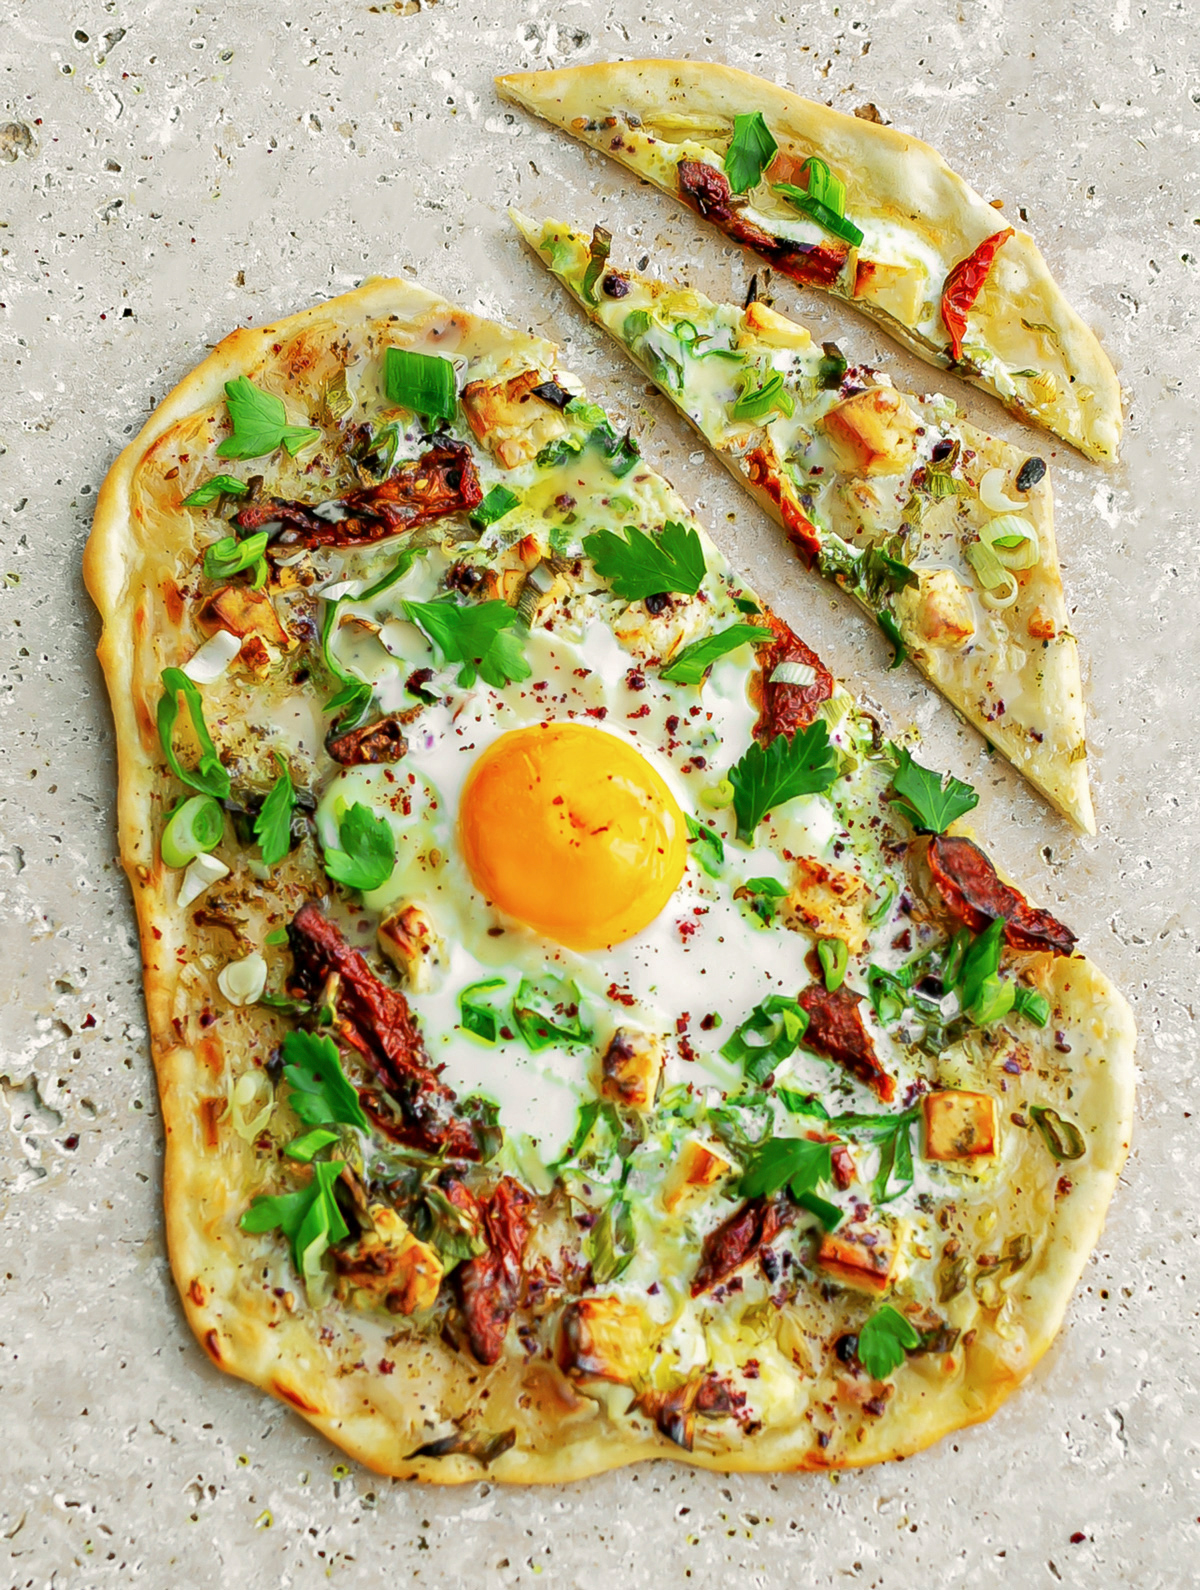 Za’atar Feta and Egg Flatbread - Easy a quick alternative to pizza